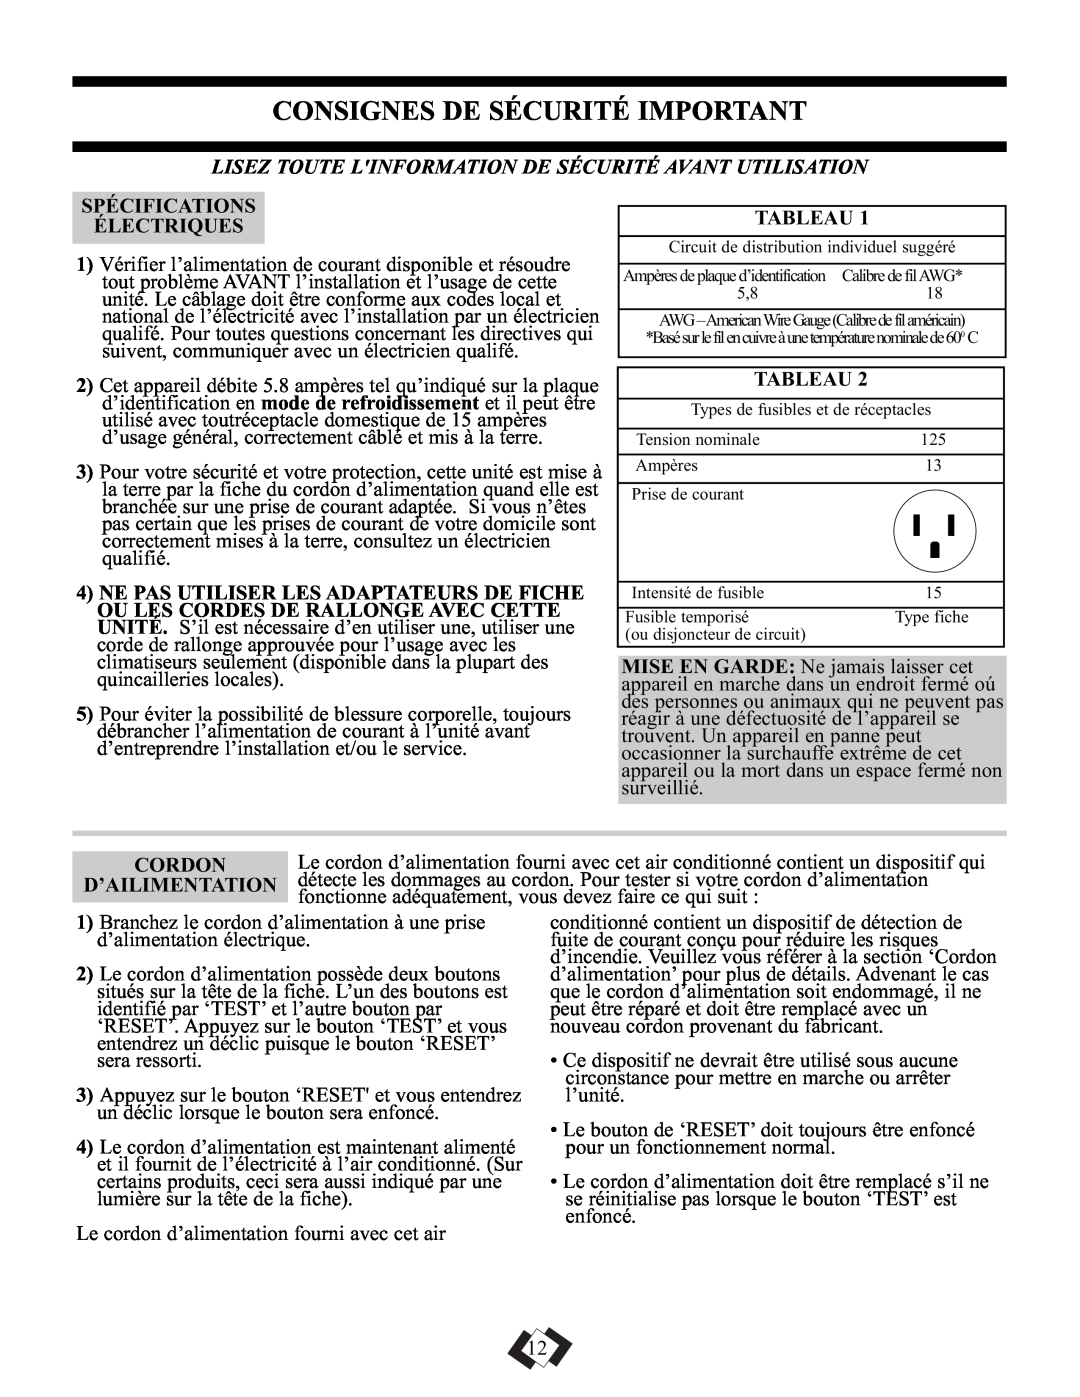 Danby DPAC5009 manual Consignes De Sécurité Important, Spécifications Électriques, Tableau, Cordon 